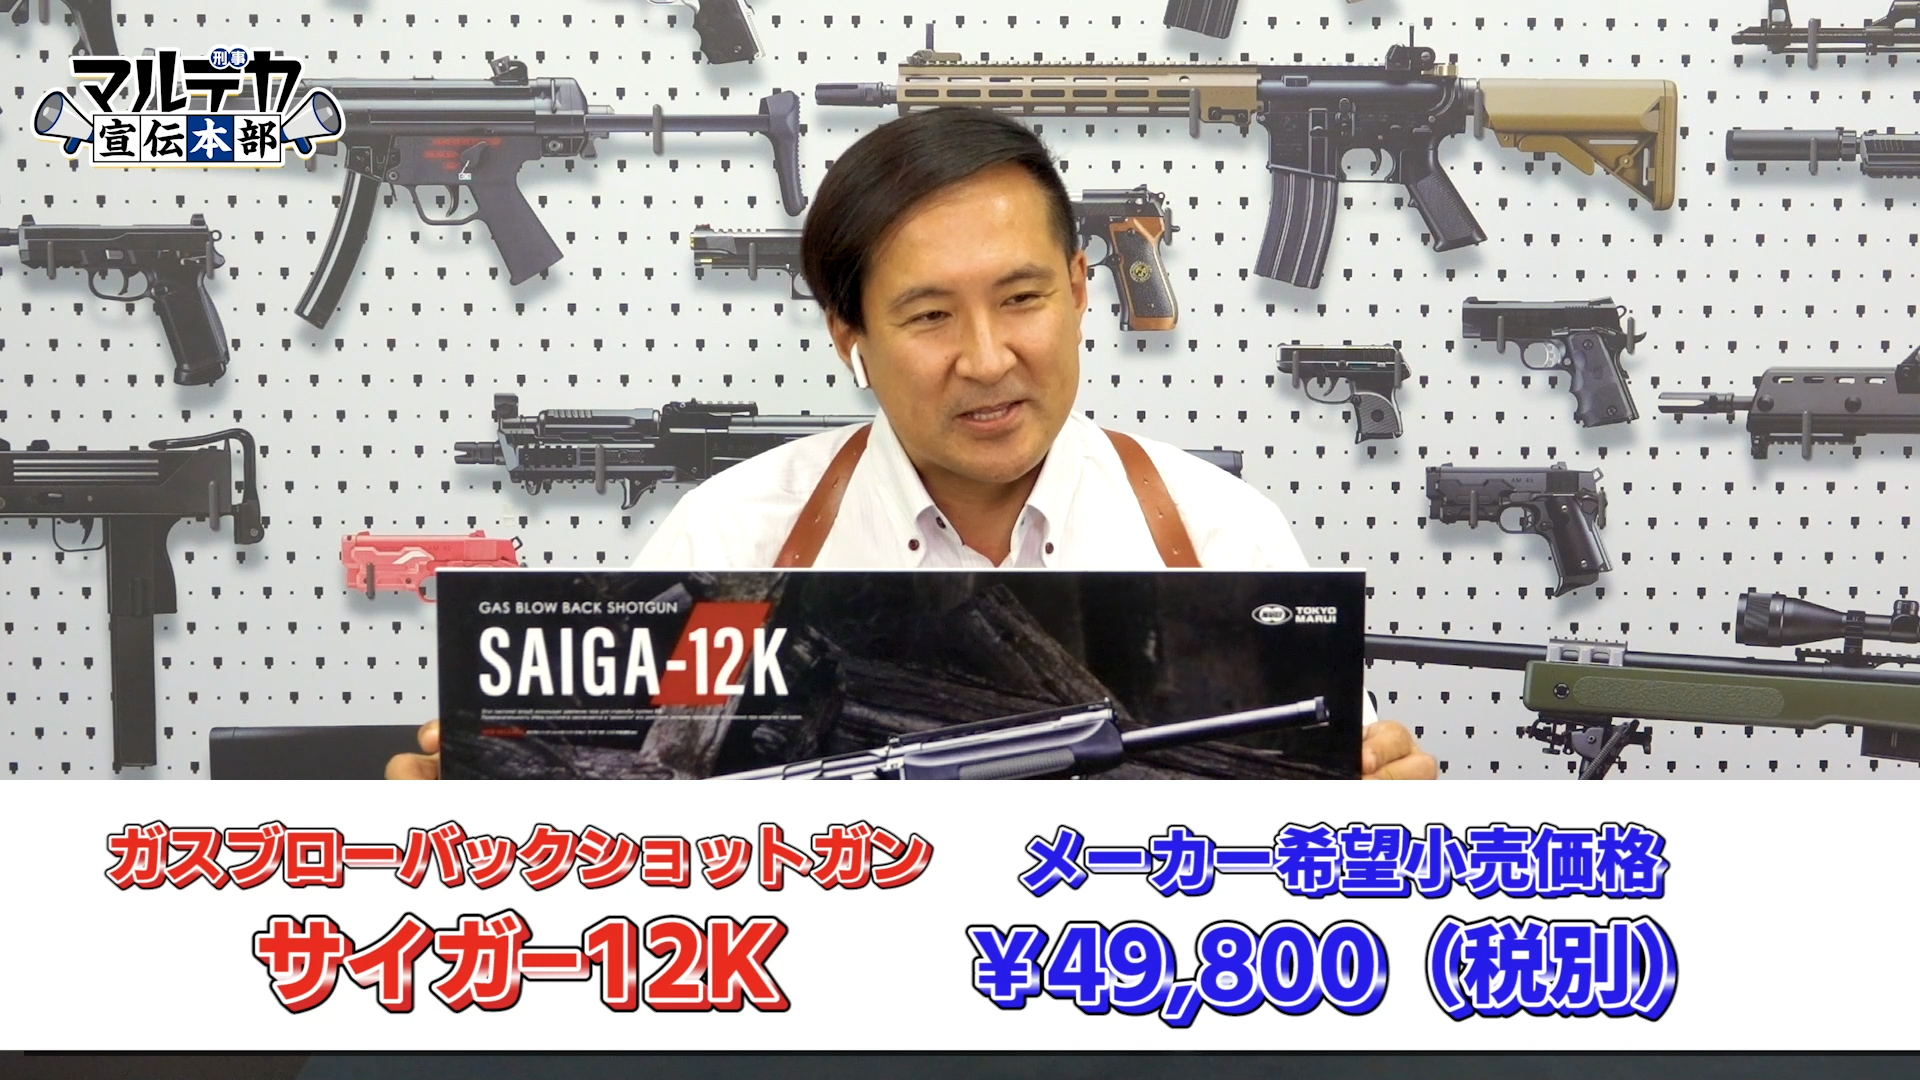 東京マルイ、「ガスブローバックショットガン SAIGA-12K」の価格を発表 ...